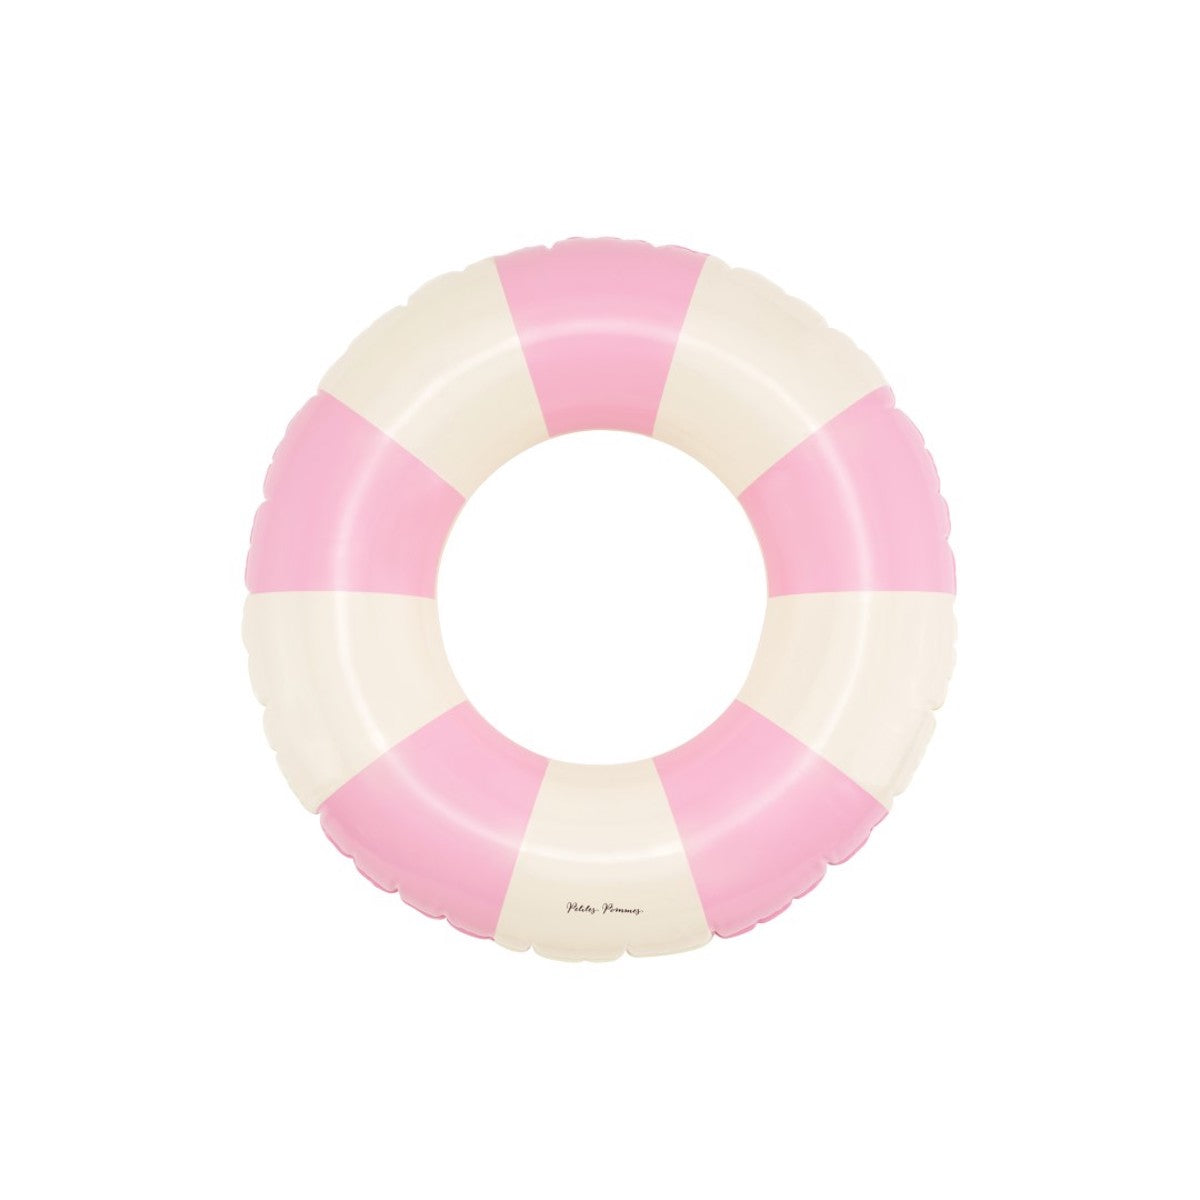 De Petites Pommes Olivia zwemband in de kleur Bubblegum (roze) is een opblaasbare zwemband met een diameter van 45cm. Deze zwemband heeft een leuk en kleurrijk ontwerp in een streep design. VanZus